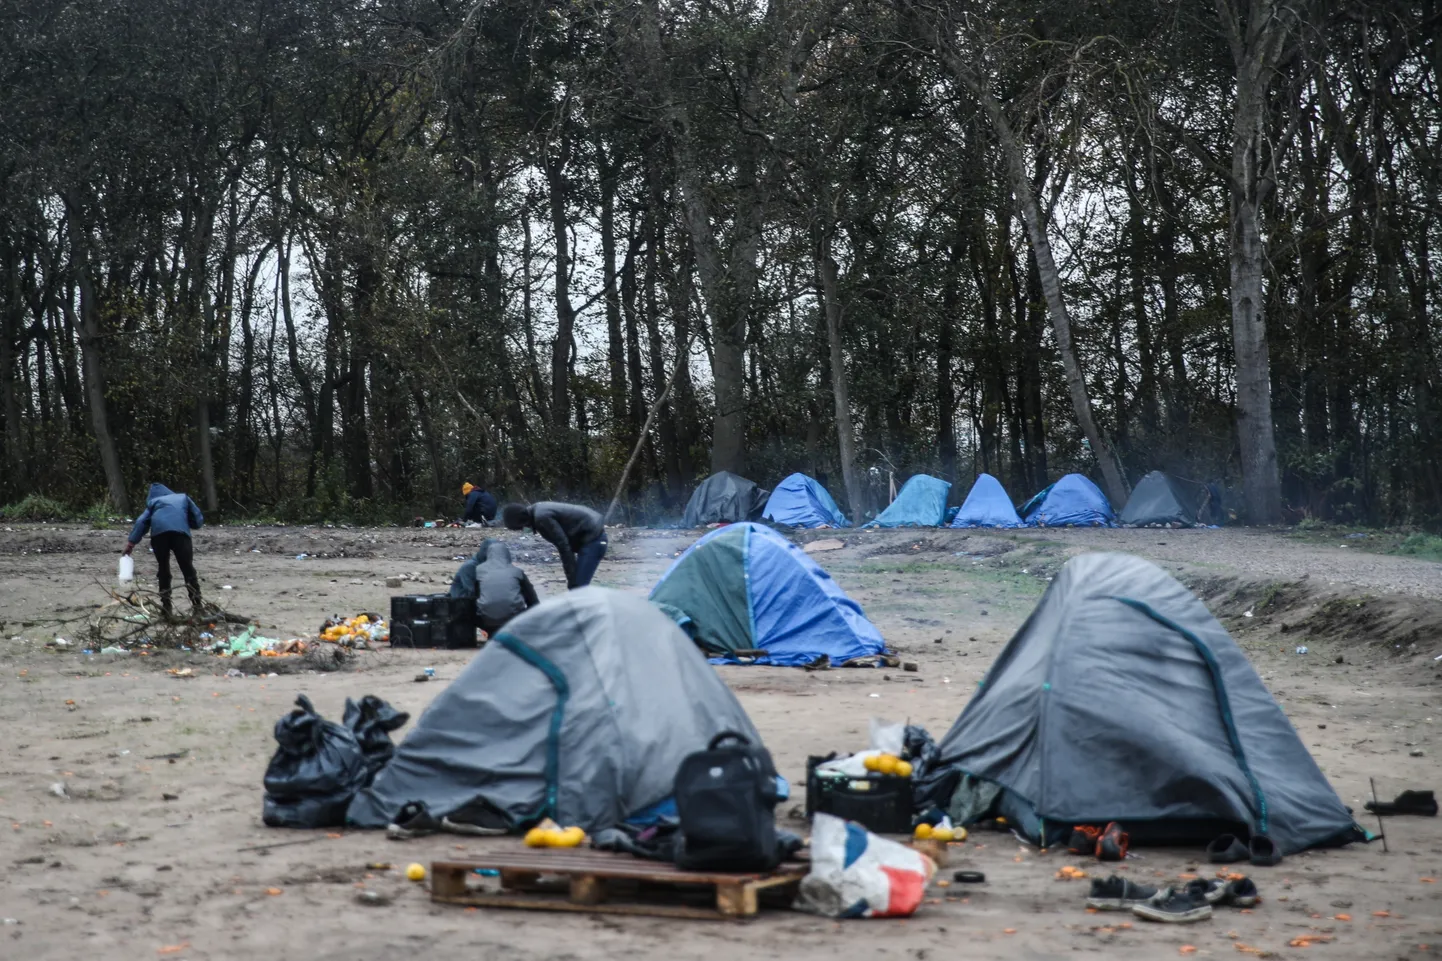 Sel 2021. aasta 27. novembril tehtud fotol on Sudaanist pärit ebaseaduslike sisserändajate laager Prantsusmaal Calais's, kust nad üritasid edasi liikuda üle La Manche'i väina Inglismaale. Vaid mõni päev enne pildi tegemist läks väinas tormise ilmaga põhja alus, millel olnud 27 migranti hukkus.